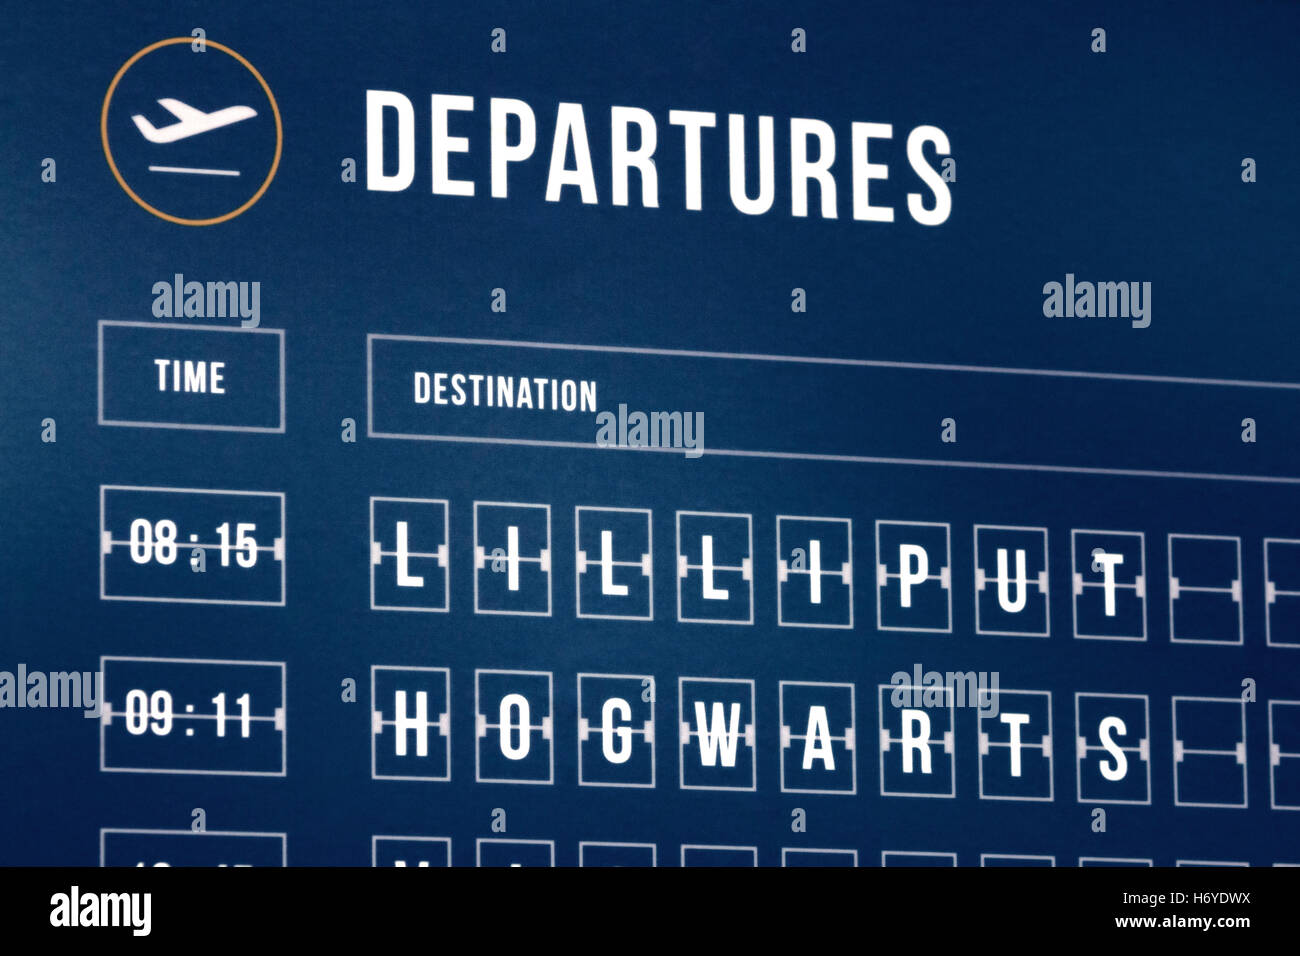 Ein Flughafen Abfahrt Fahrplan mit fiktiven Orten (Lilliput und Hogwarts) Stockfoto